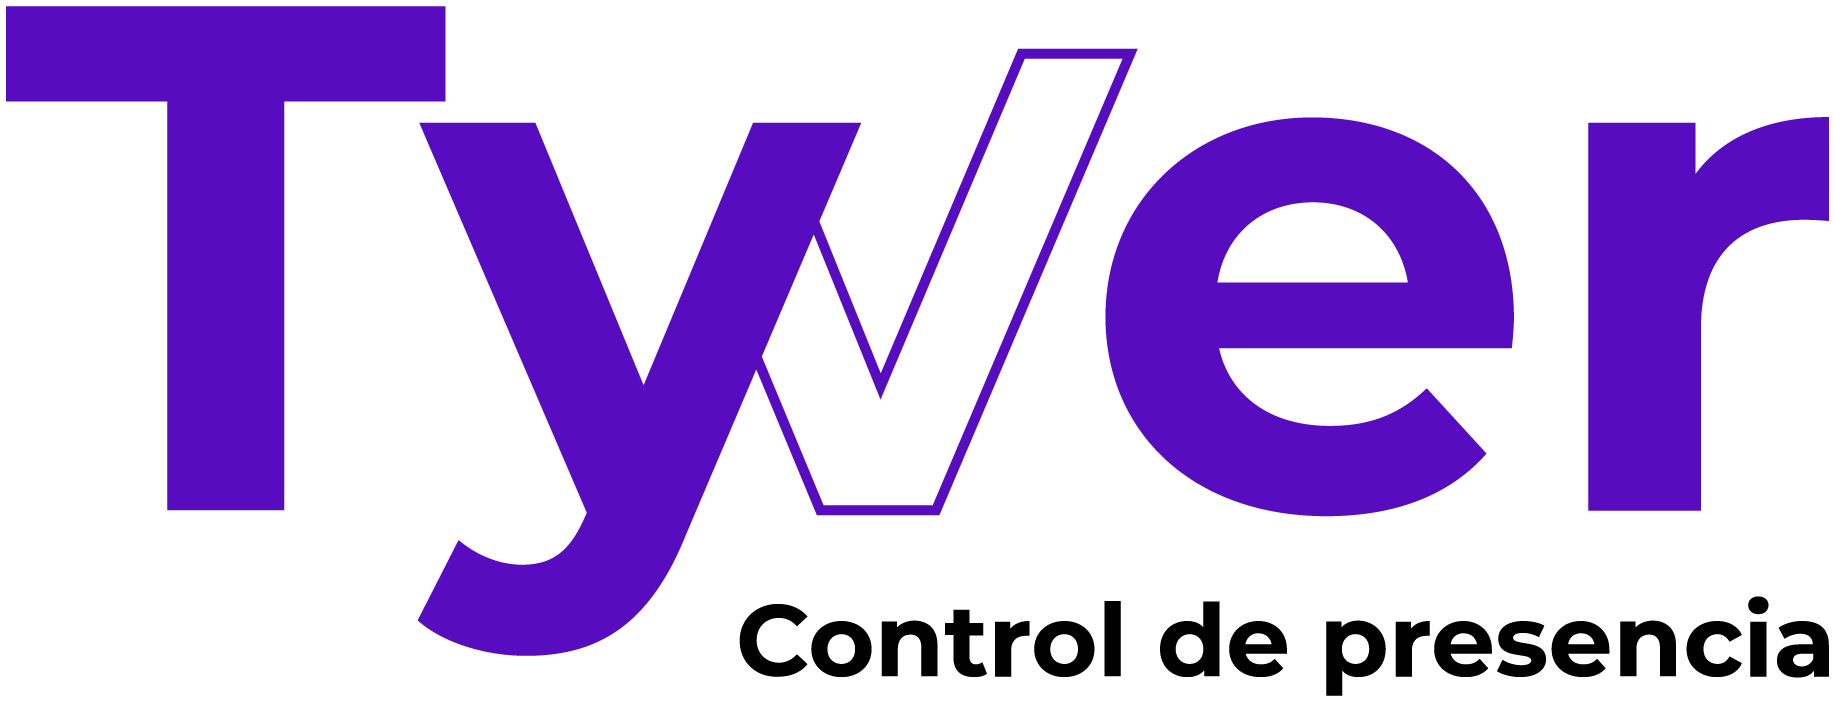 Tyver | Software control presencial |By Lunia